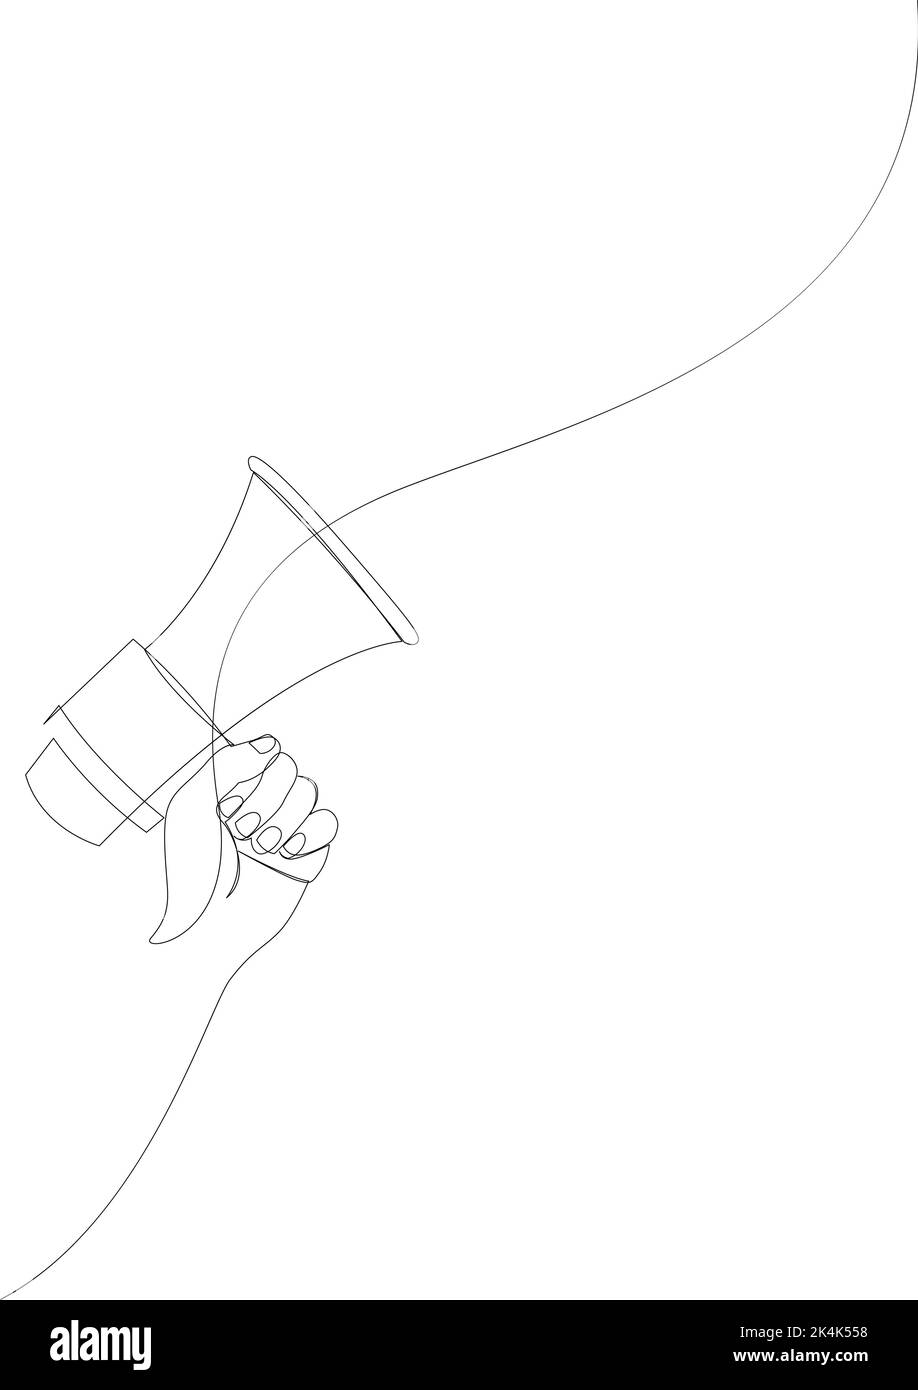 Eine Linienzeichnung des Hornlautsprechers mit Handzeichen und Symbol für Ansage und Einstellung von Mitarbeitern. Vektorgrafik Stock Vektor